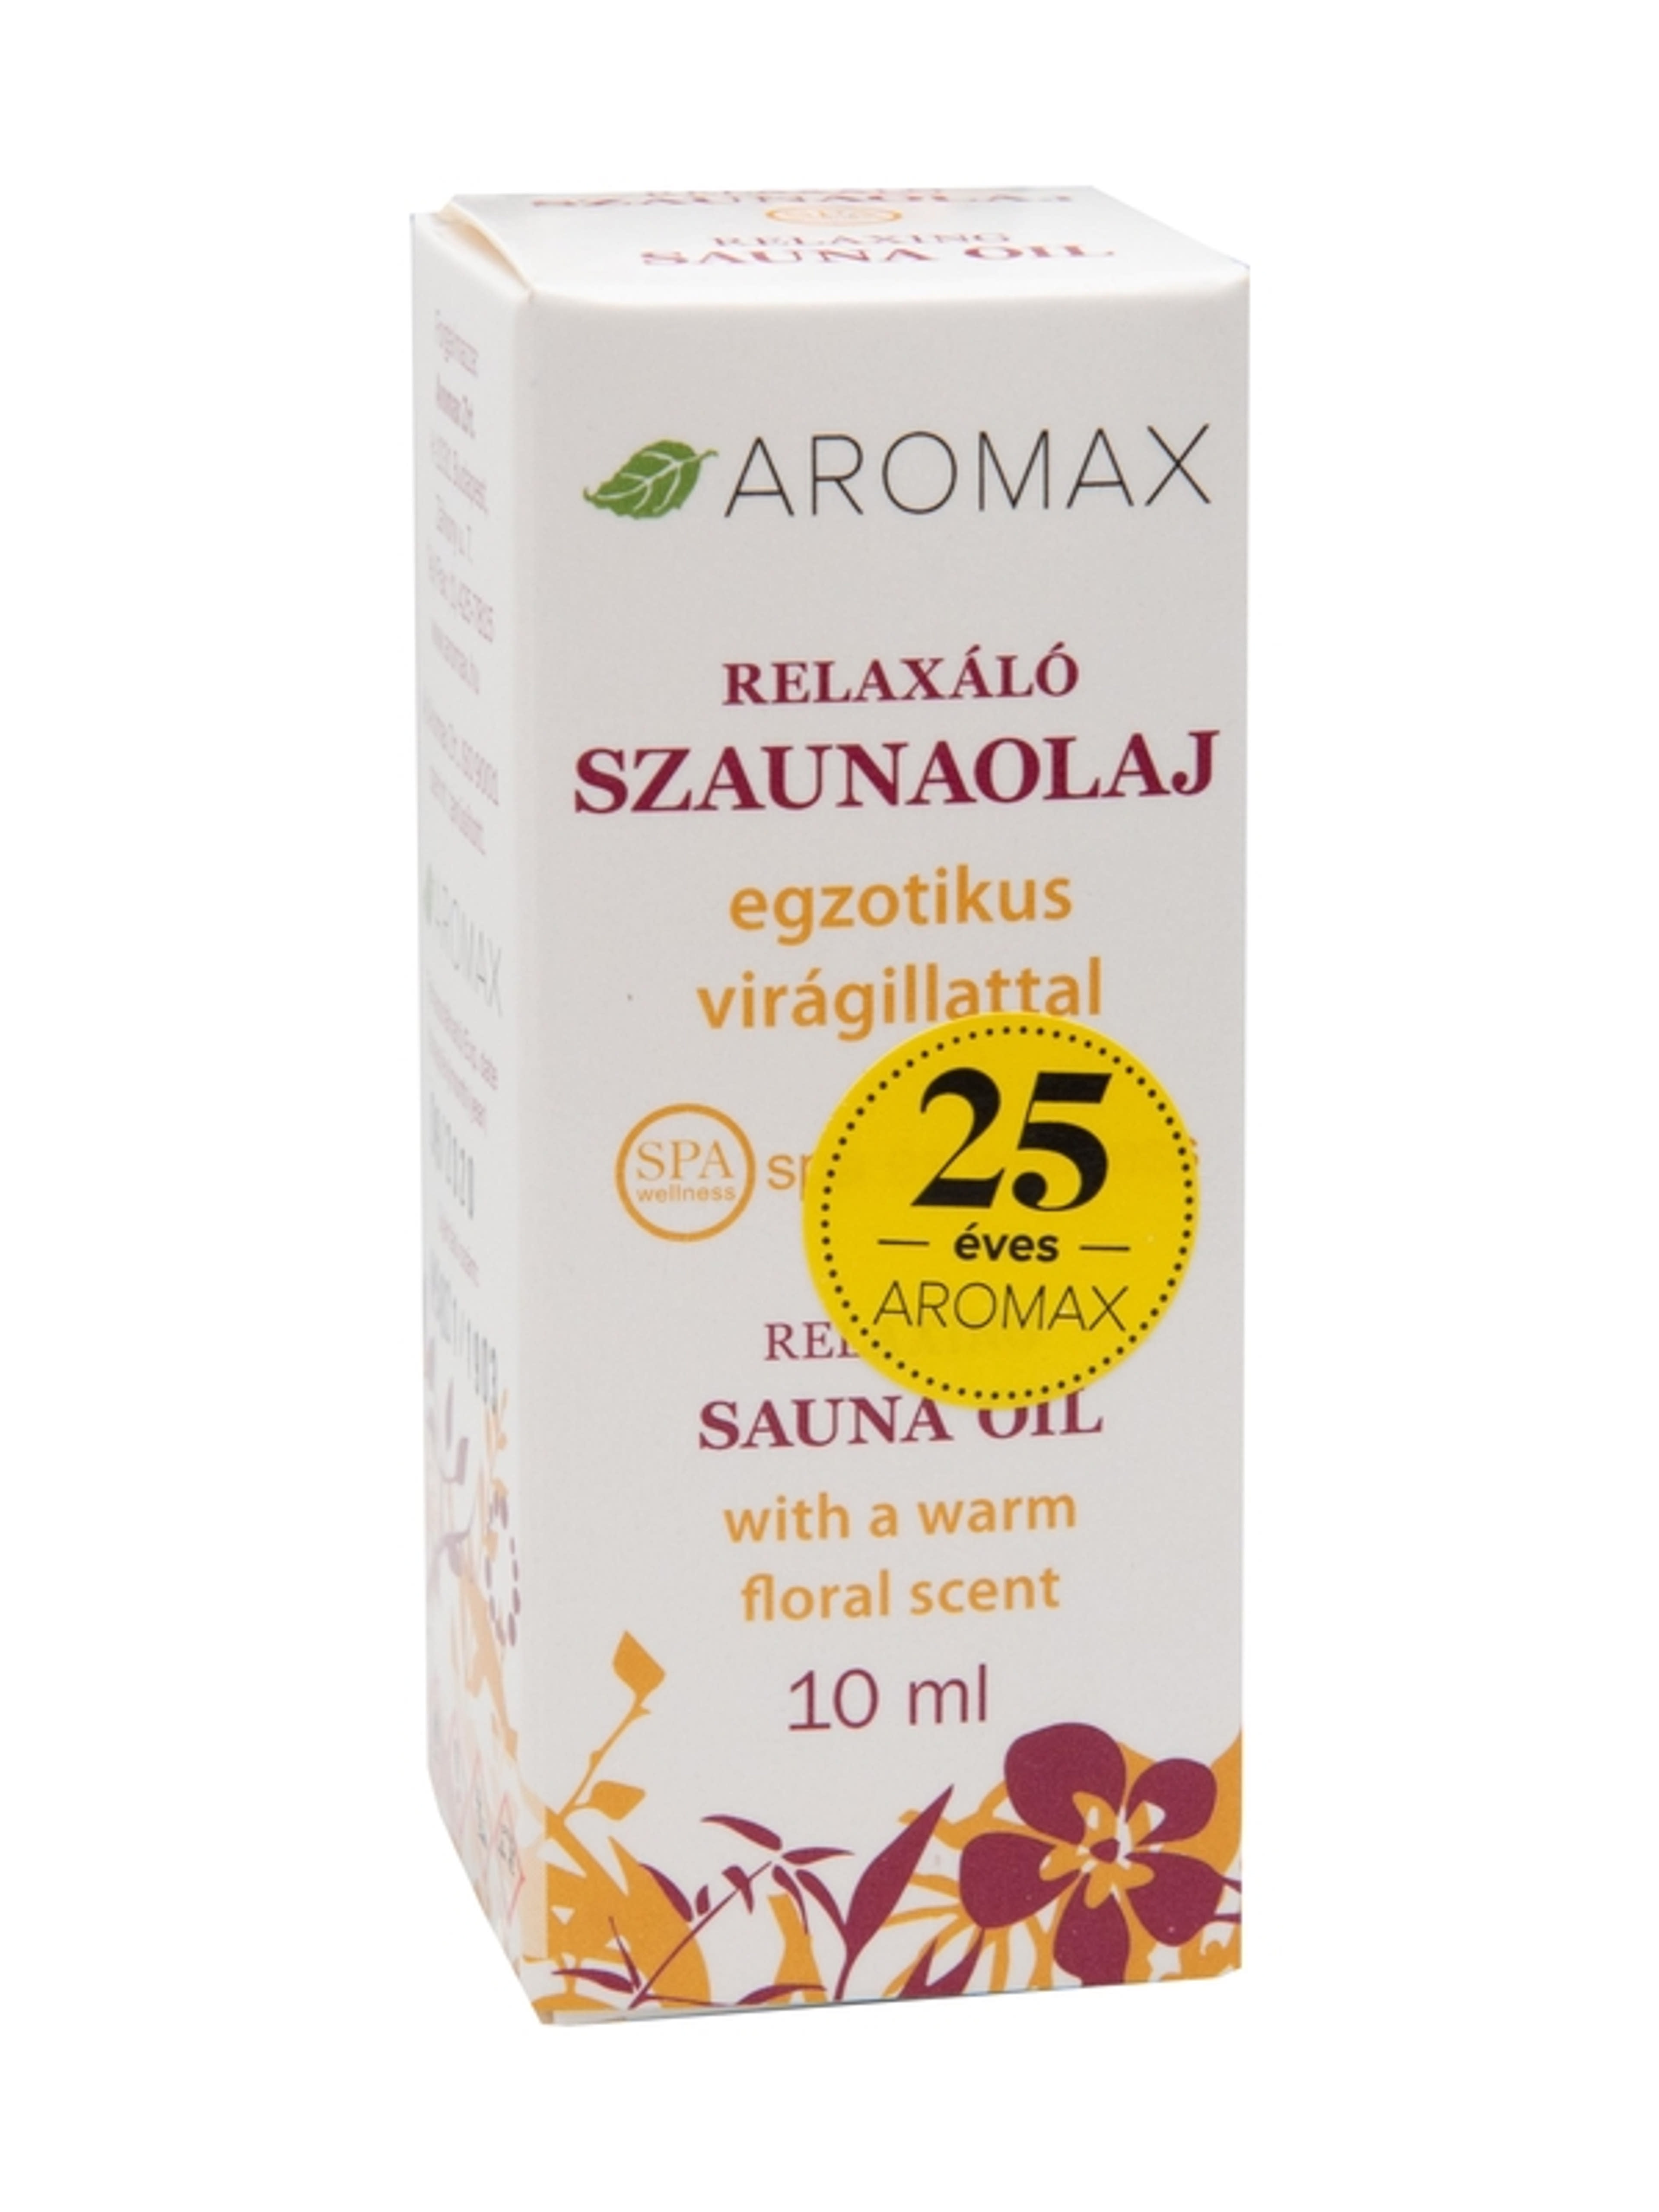 Aromax relaxáló szaunaolaj - 10 ml-1